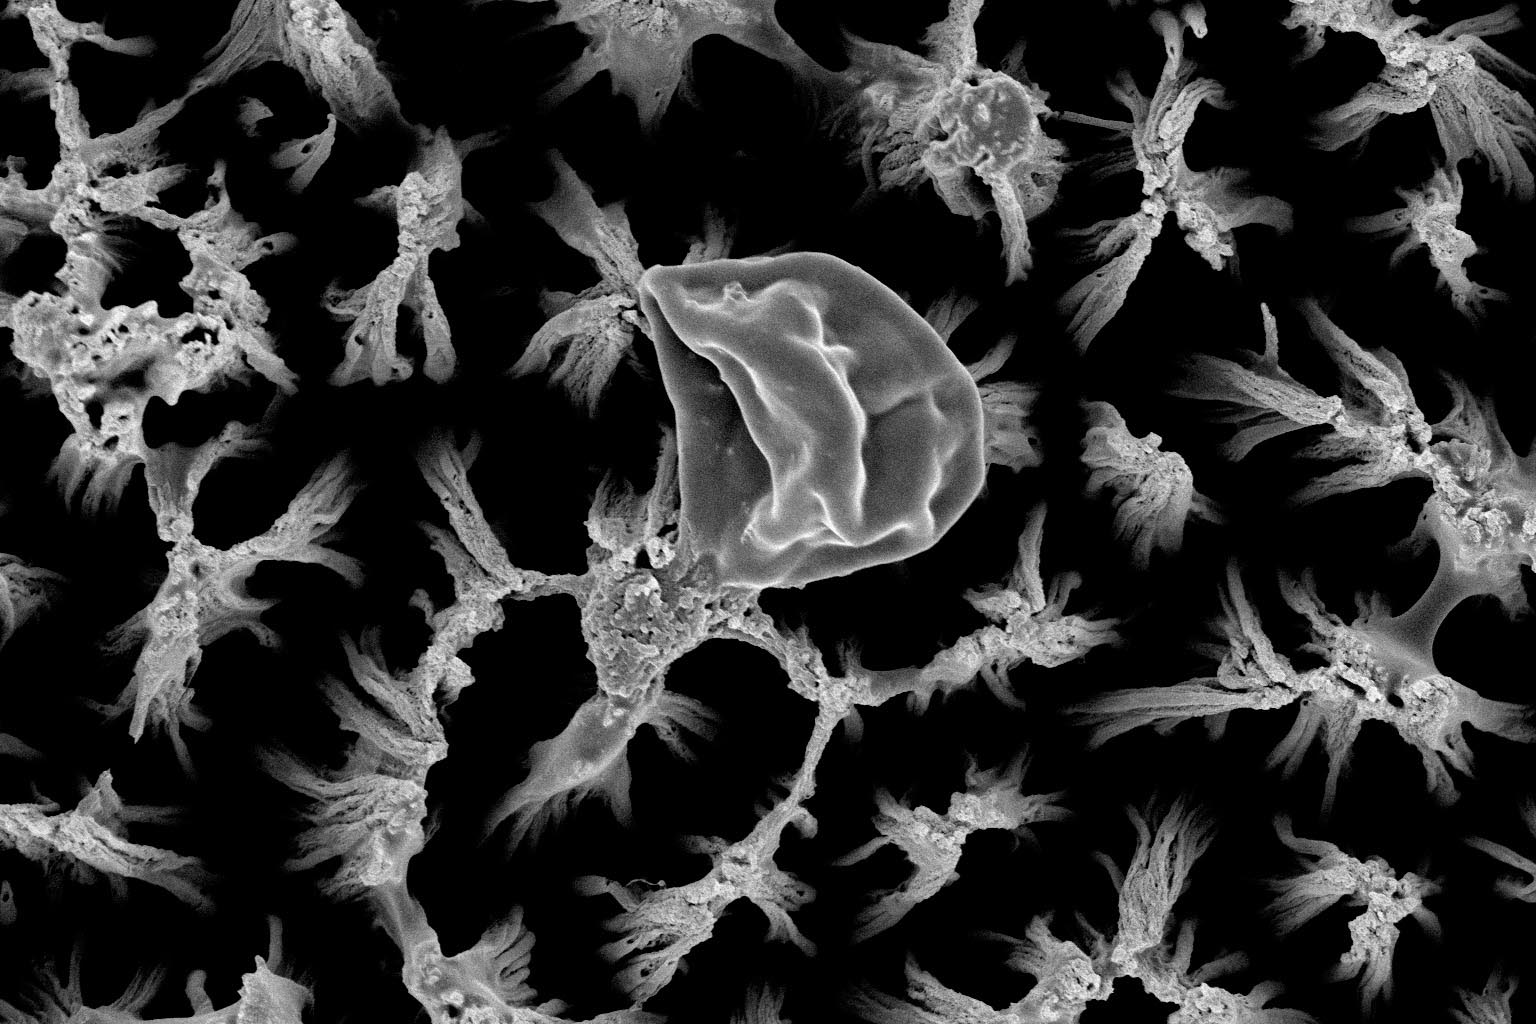 Titanyum mikro sivri uçların üzerinde yırtılmış bir Candida hücresi, 25,000 kez büyütülmüş